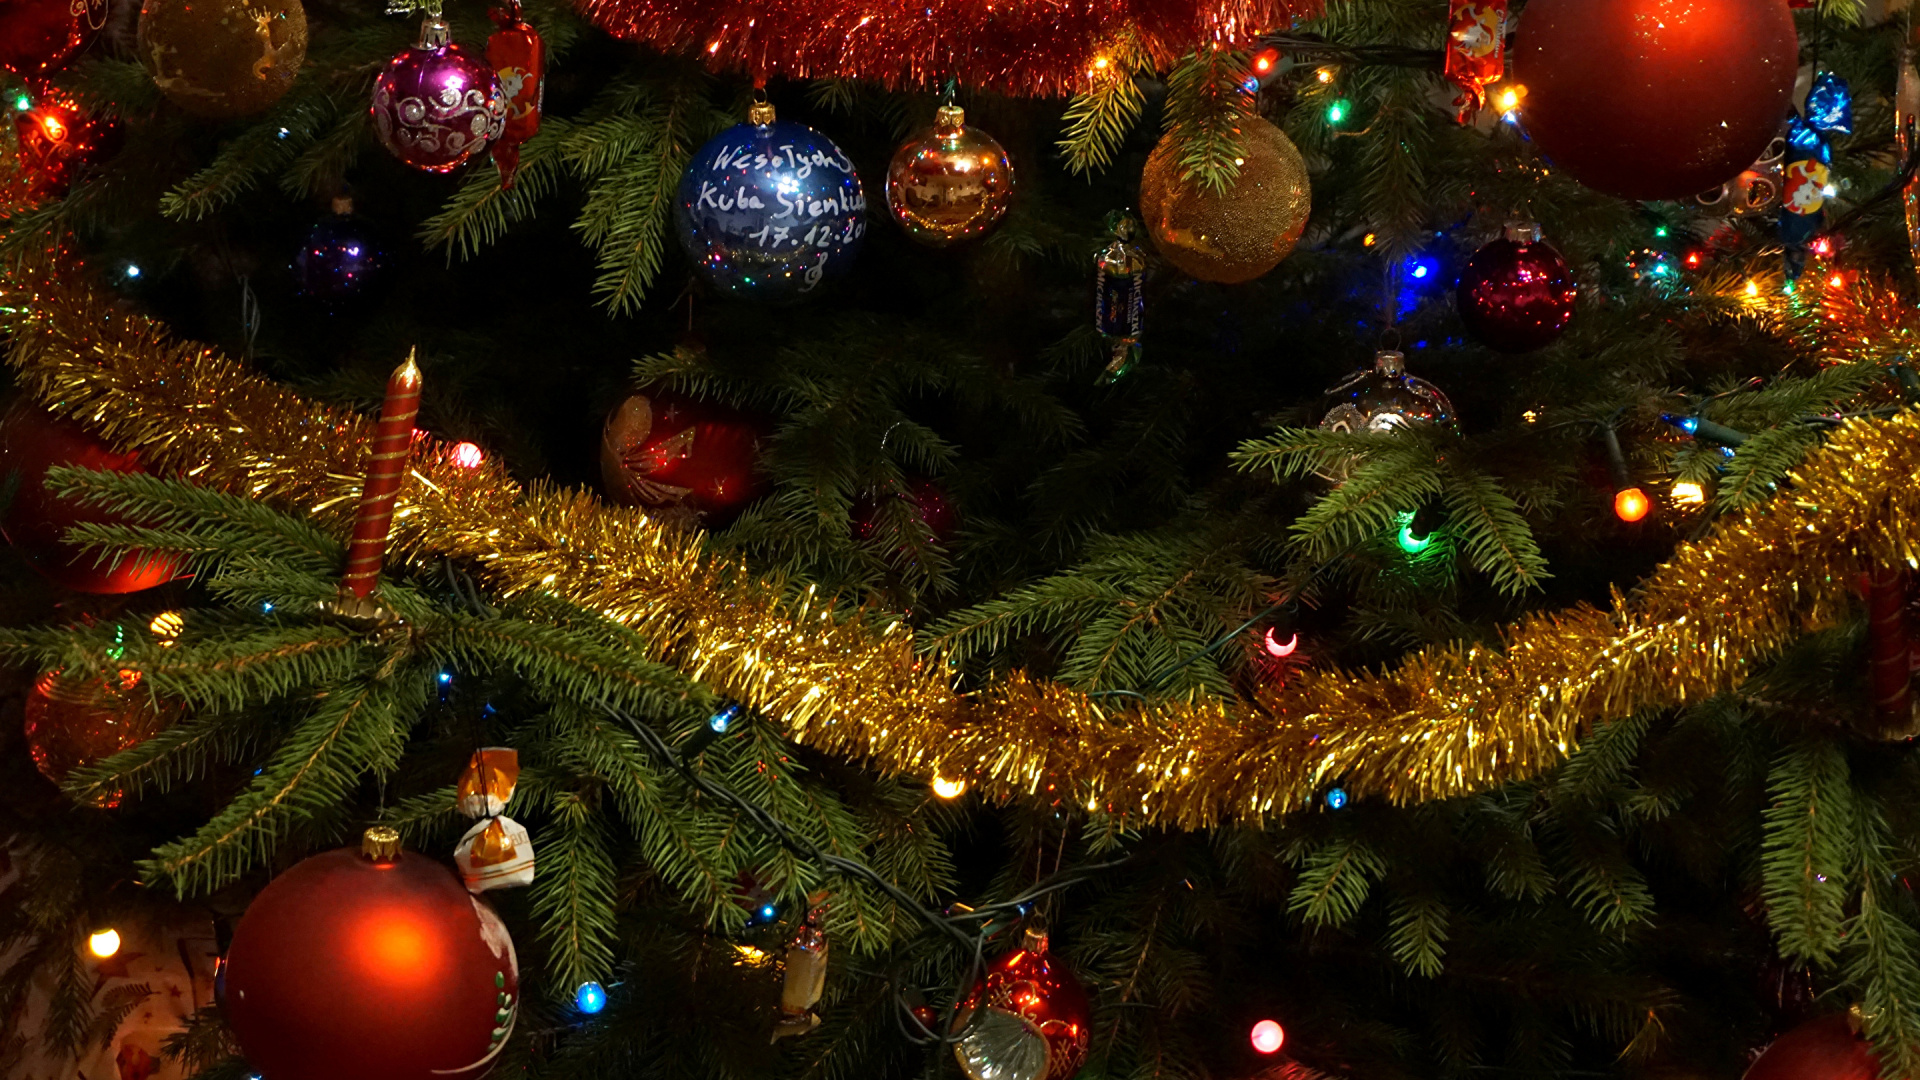 Weihnachten, Weihnachtsbeleuchtung, Weihnachtsbaum, Weihnachtsdekoration, Künstlicher Weihnachtsbaum. Wallpaper in 1920x1080 Resolution